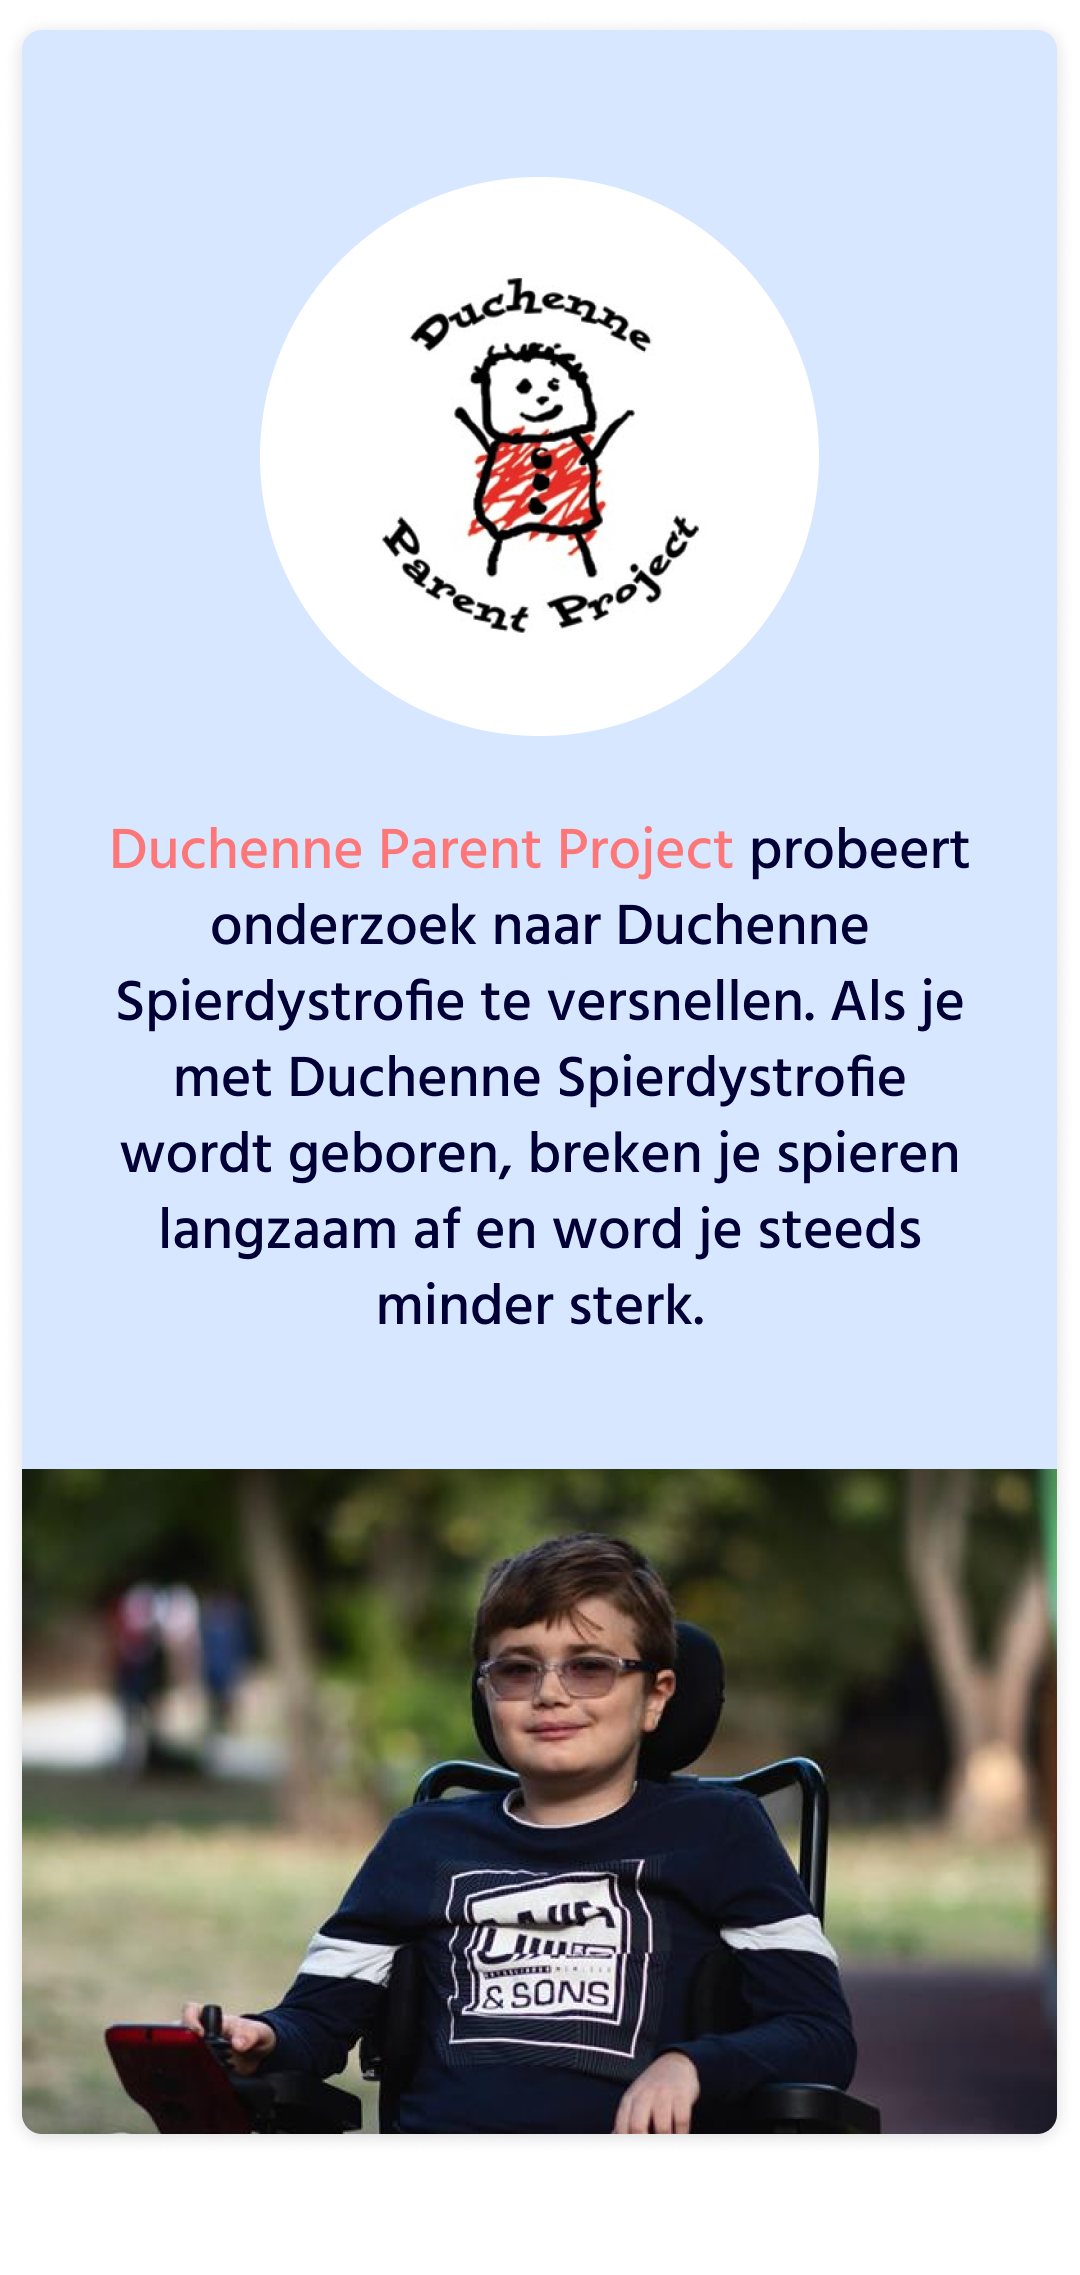 Afbeelding van kind met Duchenne voor Duchenne Parent Project